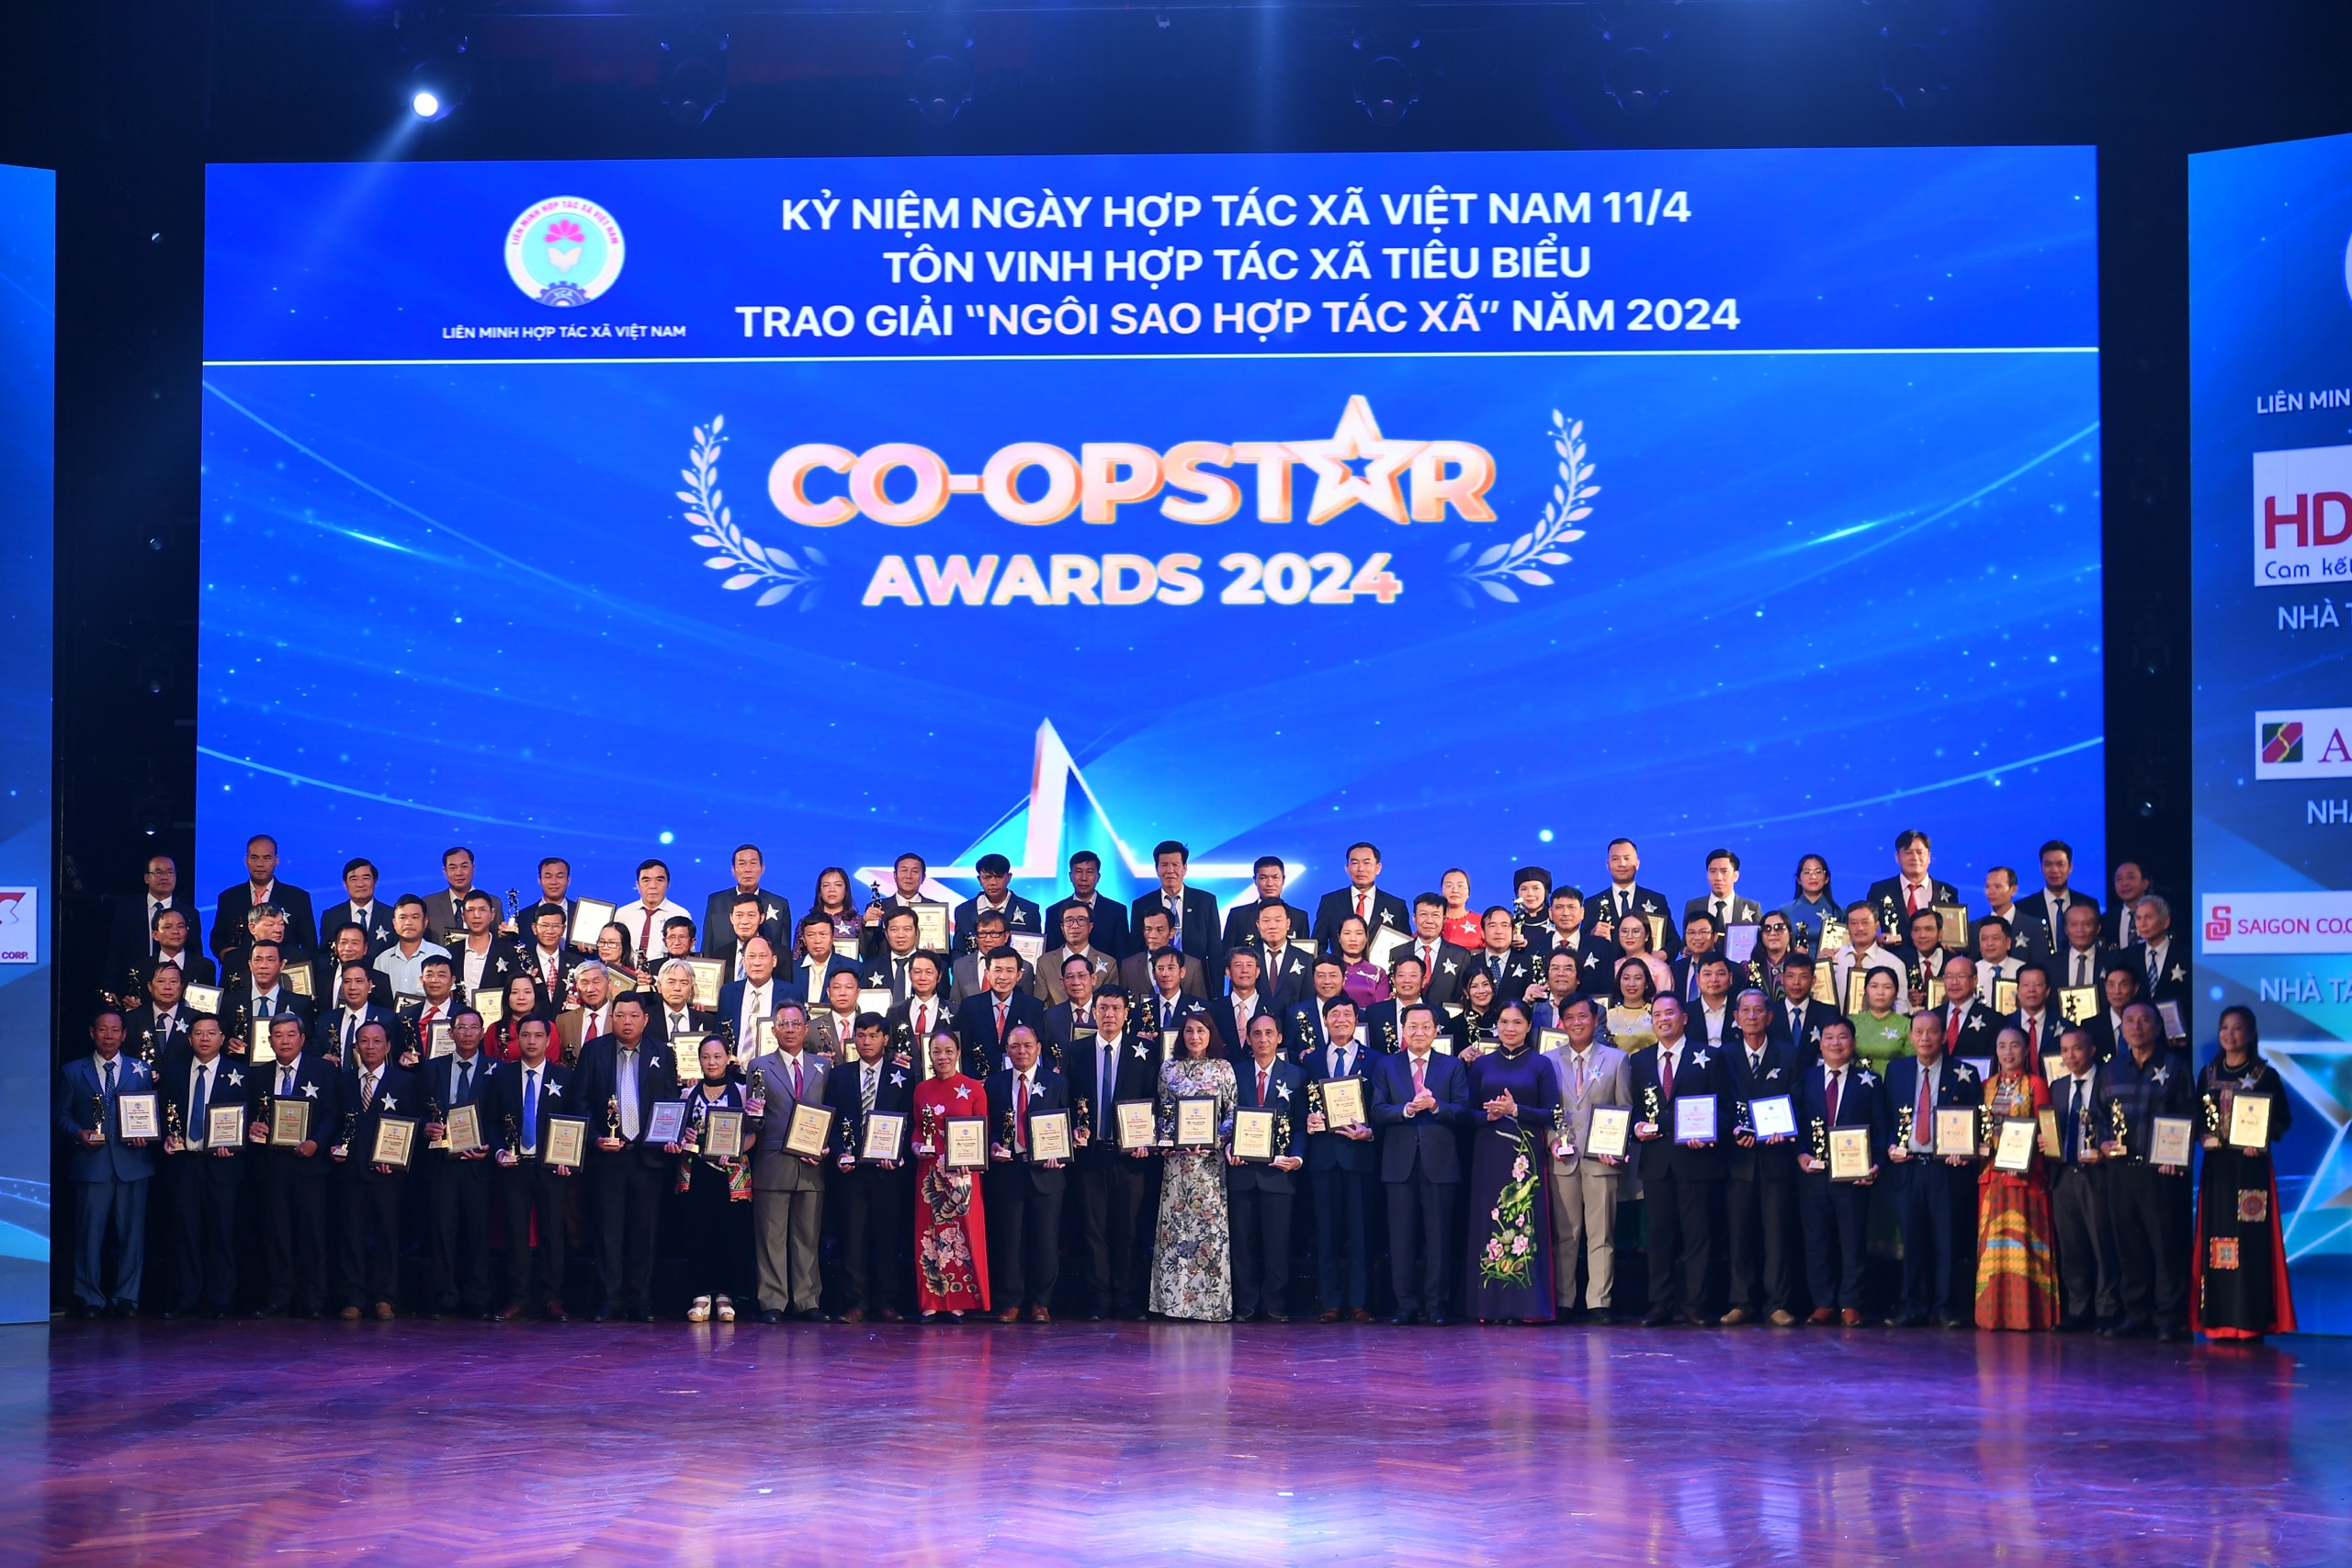 Trao giải "Co-op Star Awards 2024", Phó Thủ tướng Lê Minh Khái đánh giá cao sáng kiến của Liên minh Hợp tác xã- Ảnh 3.